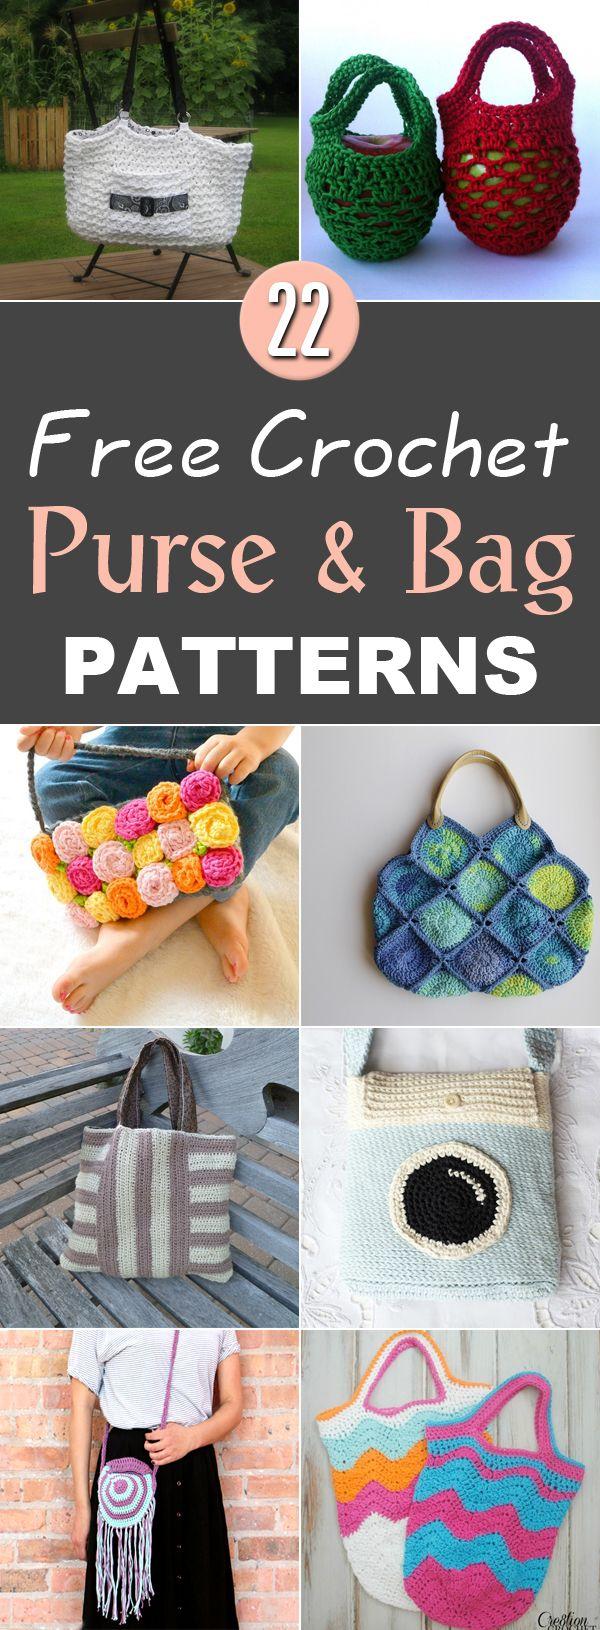 زفاف - 22 Free Crochet Purse & Bag Patterns